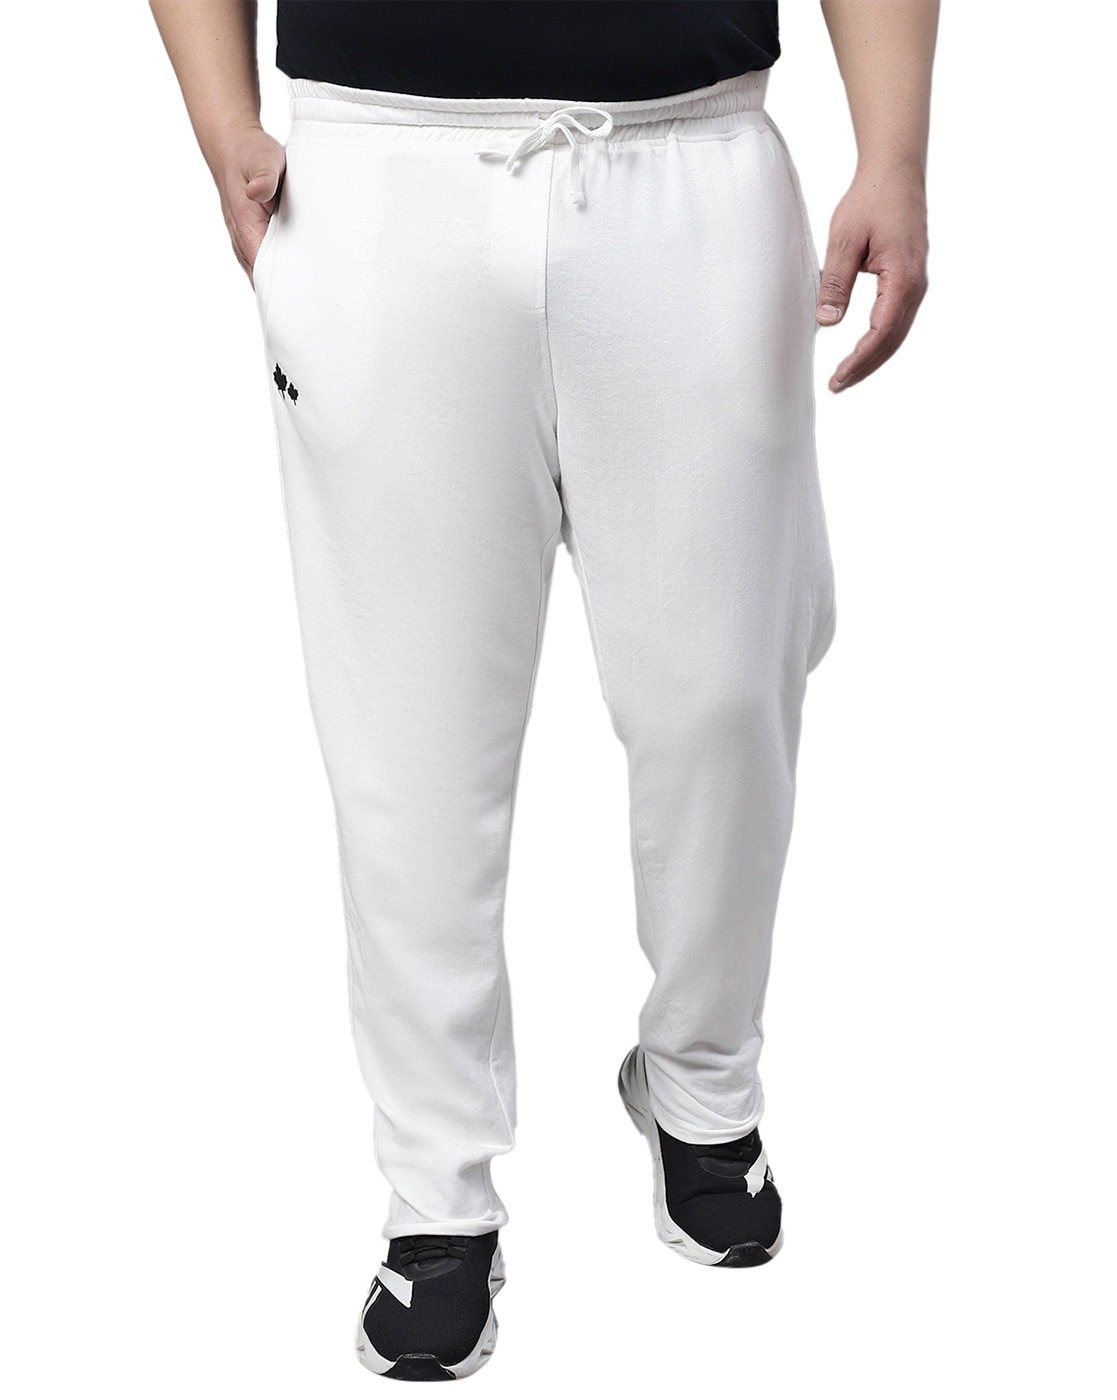 Buy Men White Print Slim Fit Casual Track Pants Online - 655409 | Van Heusen